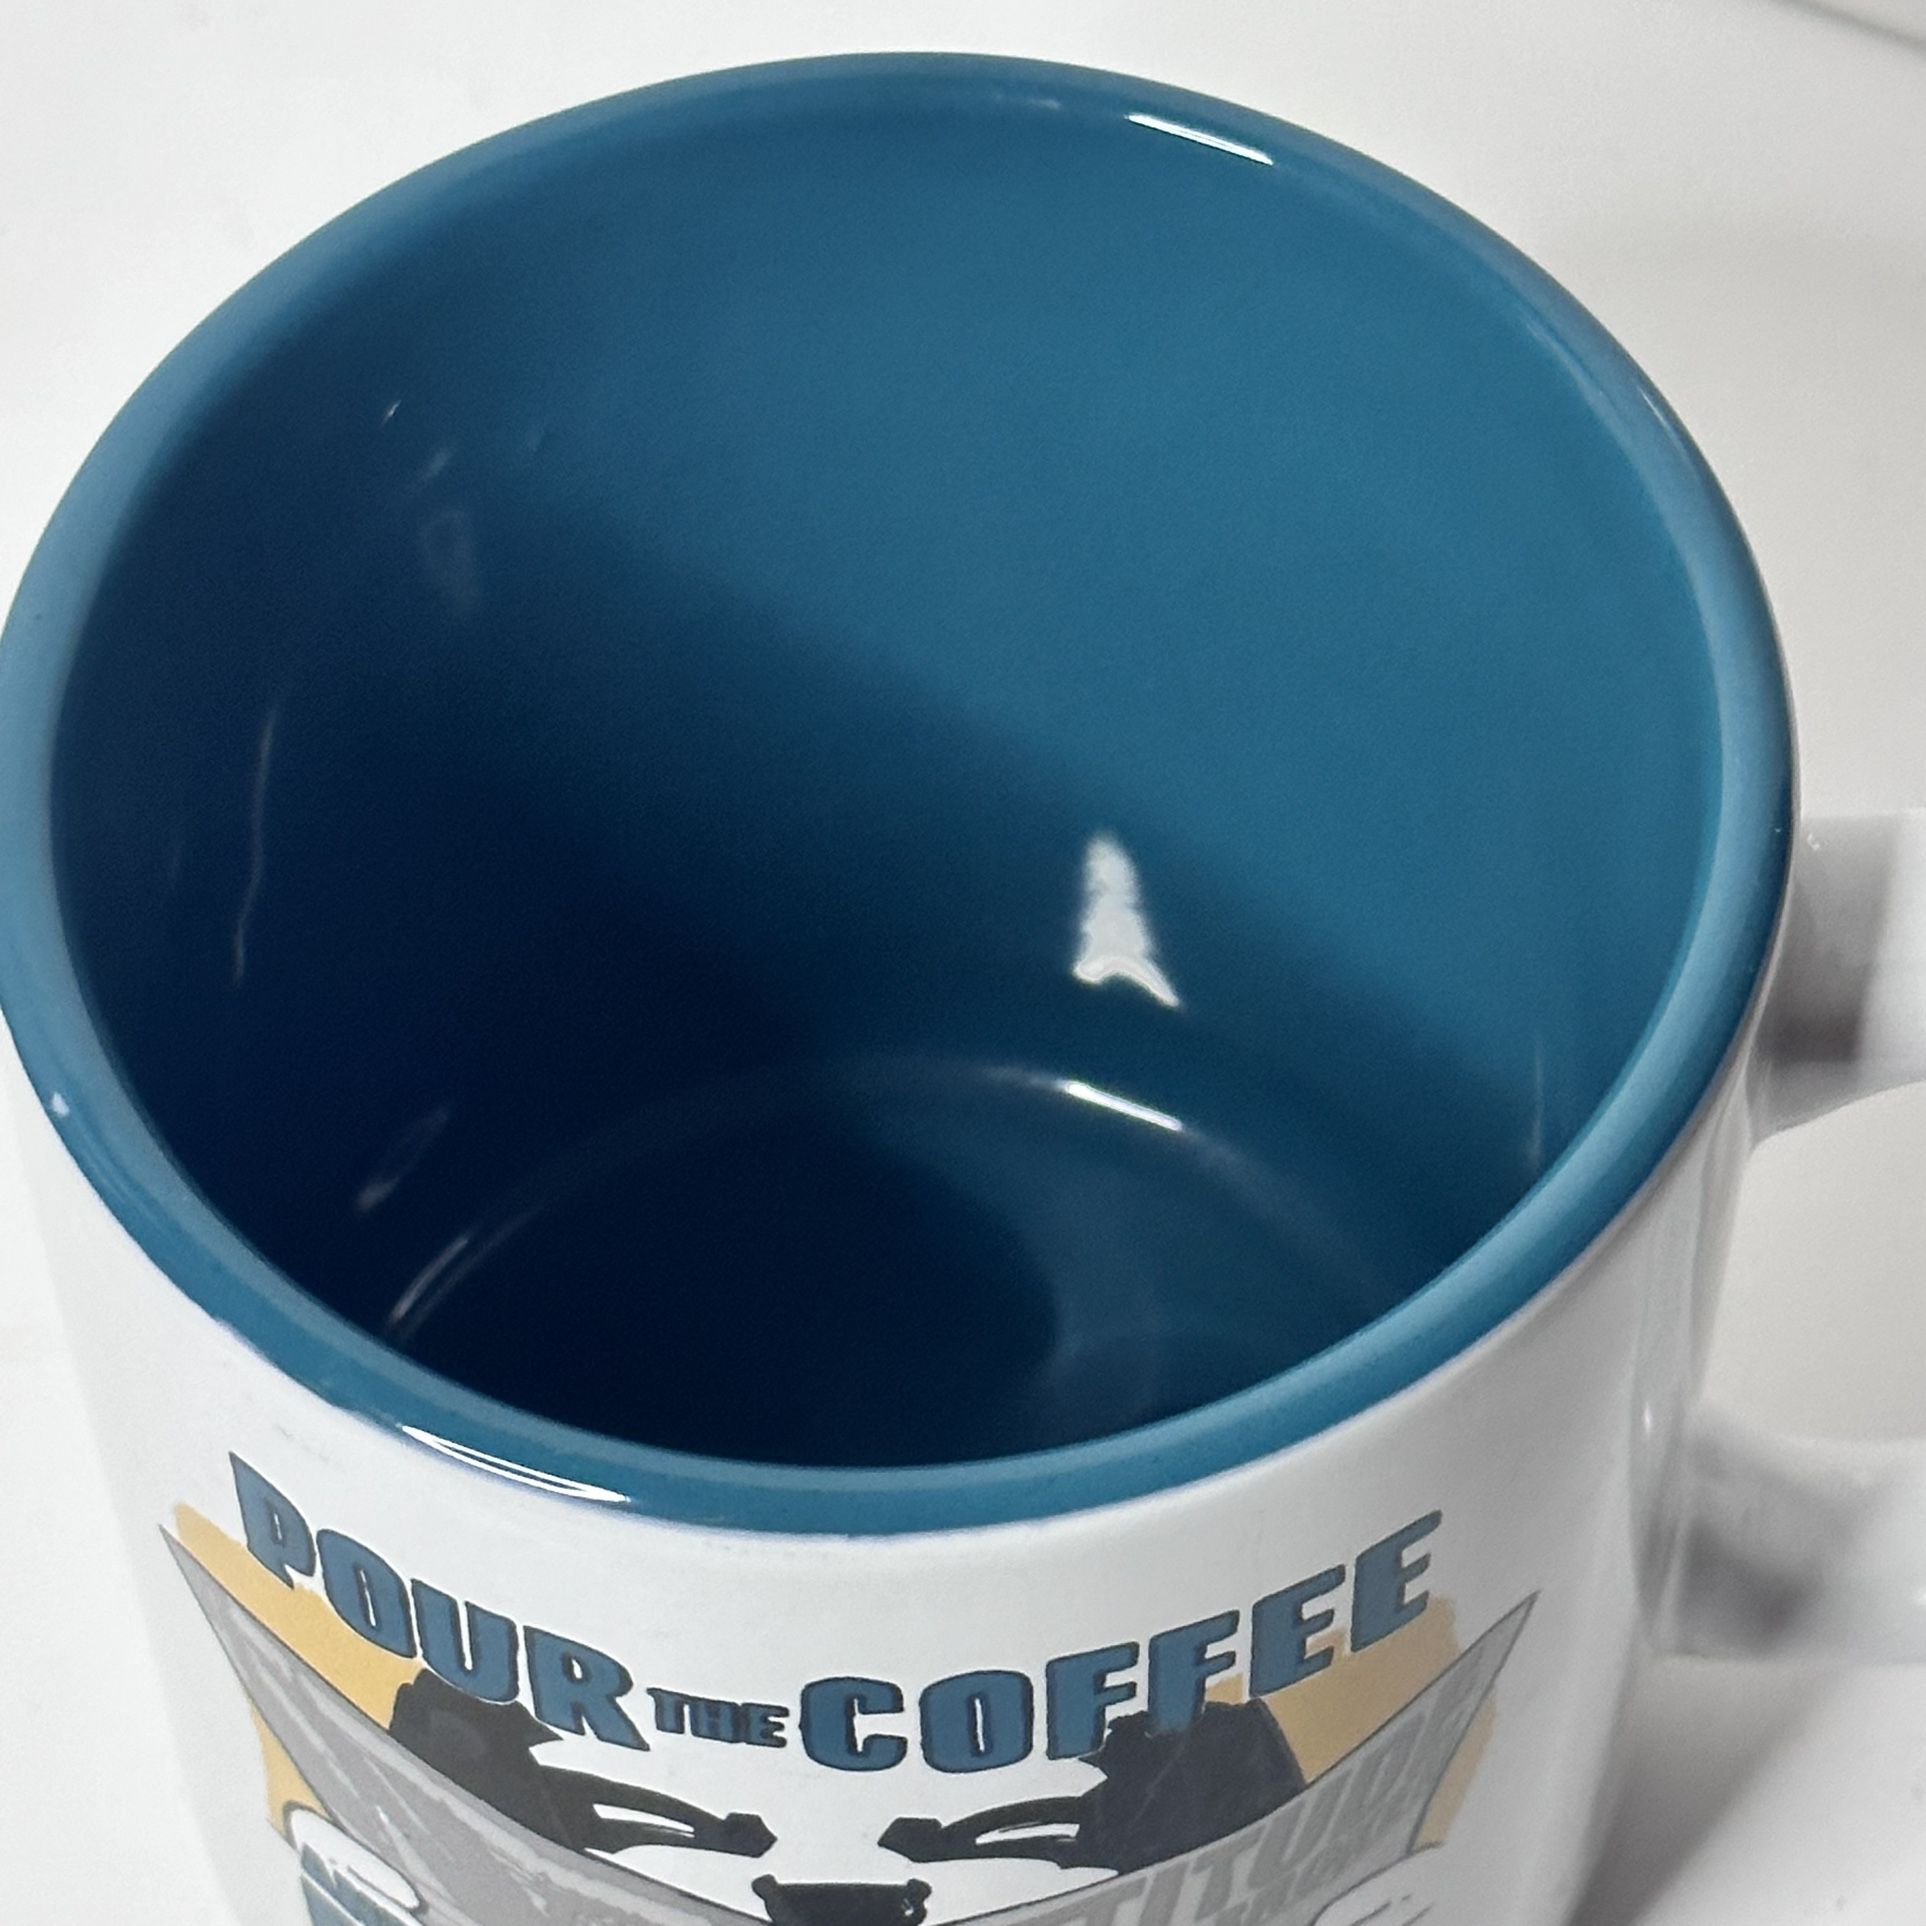 Big Dogs POUR THE COFFEE AND BACK AWAY SLOWLY jumbo huge coffee cup mug 30  oz